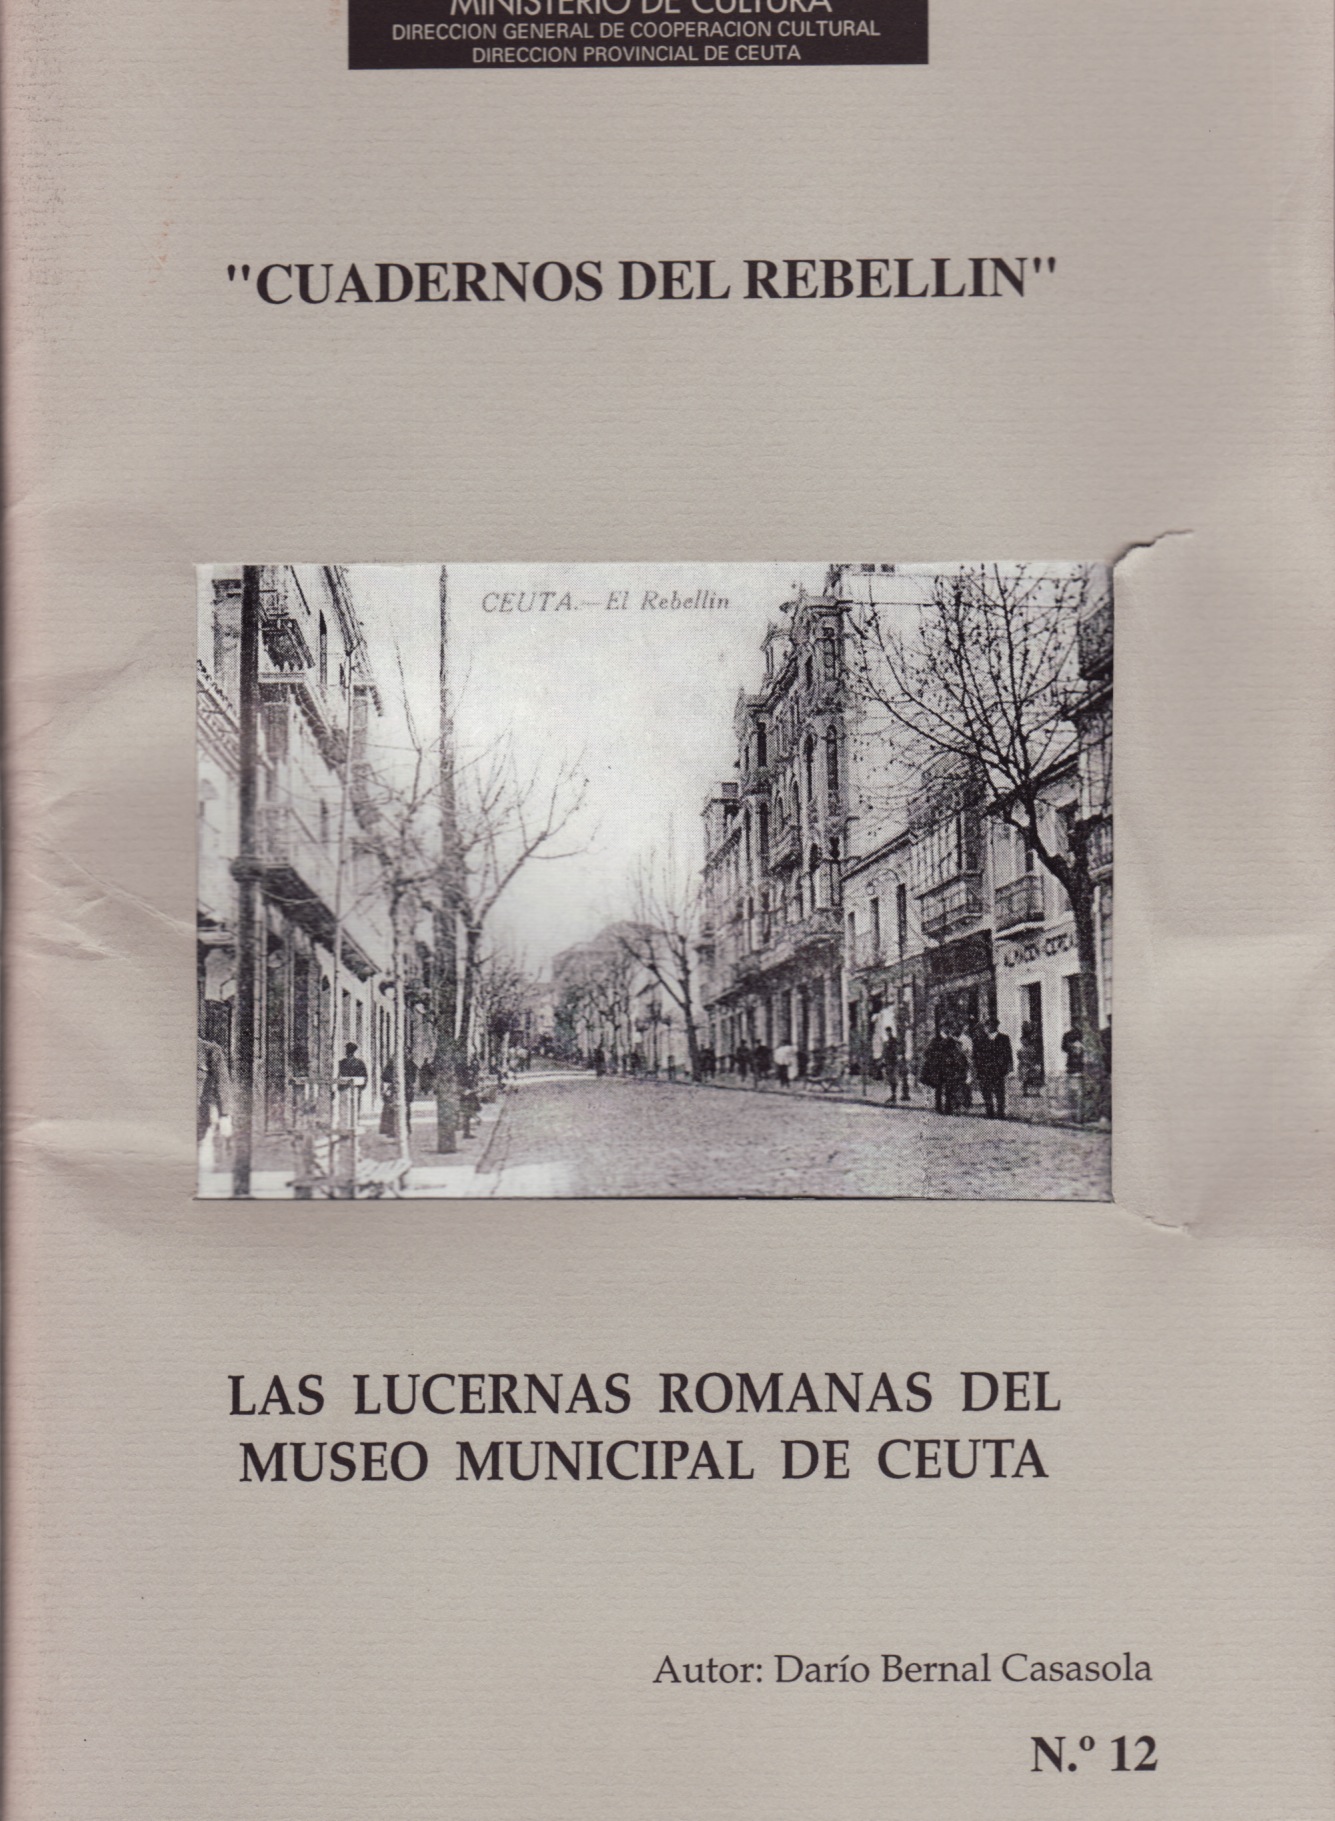 Casasola 1995